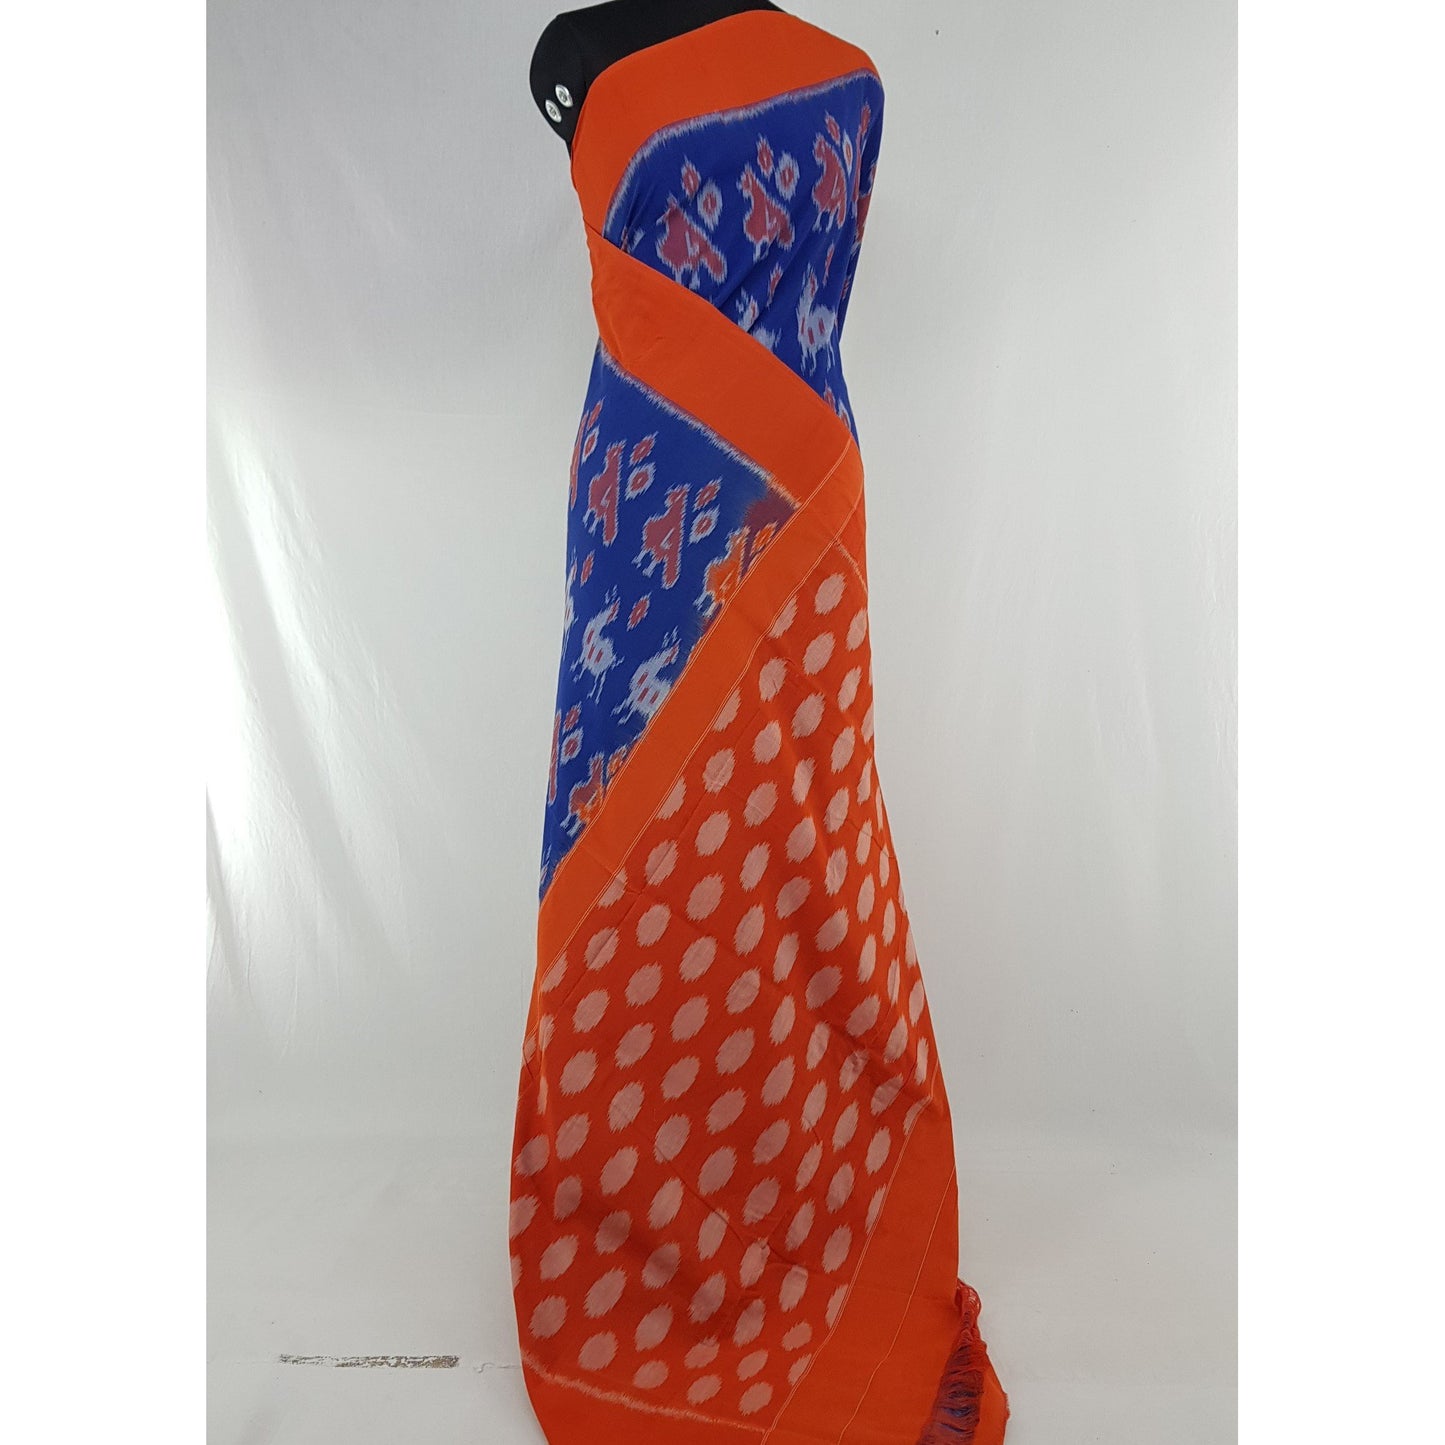 Handloom pochampally ikat mercerized cotton saree, no blouse - Vinshika